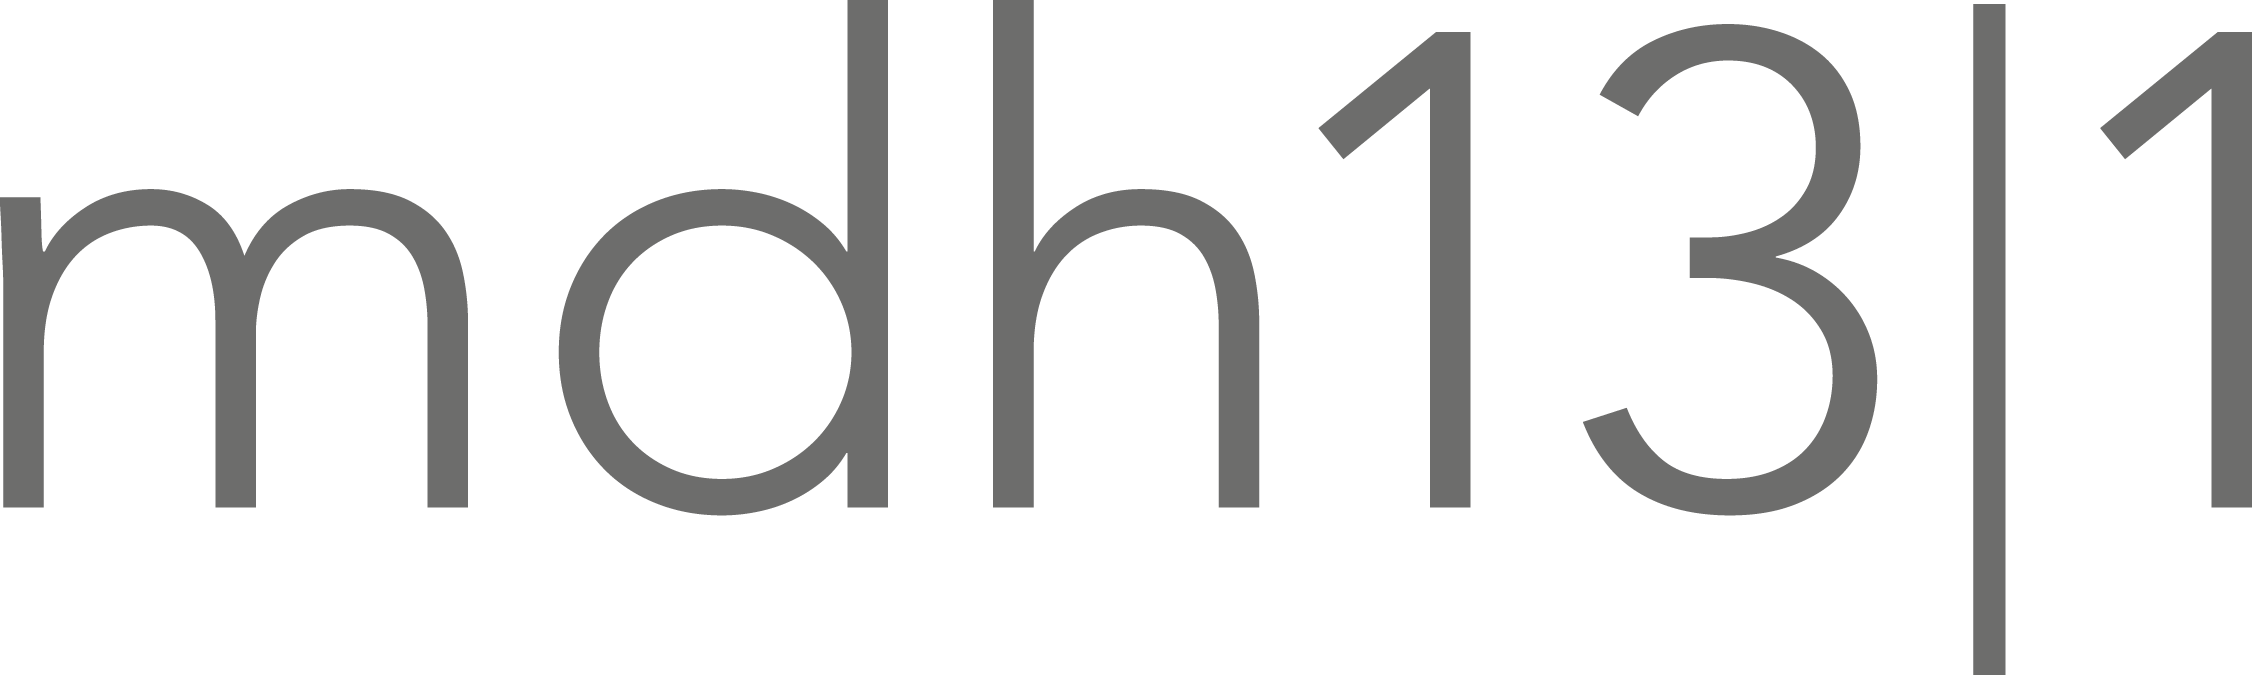 mdh logo